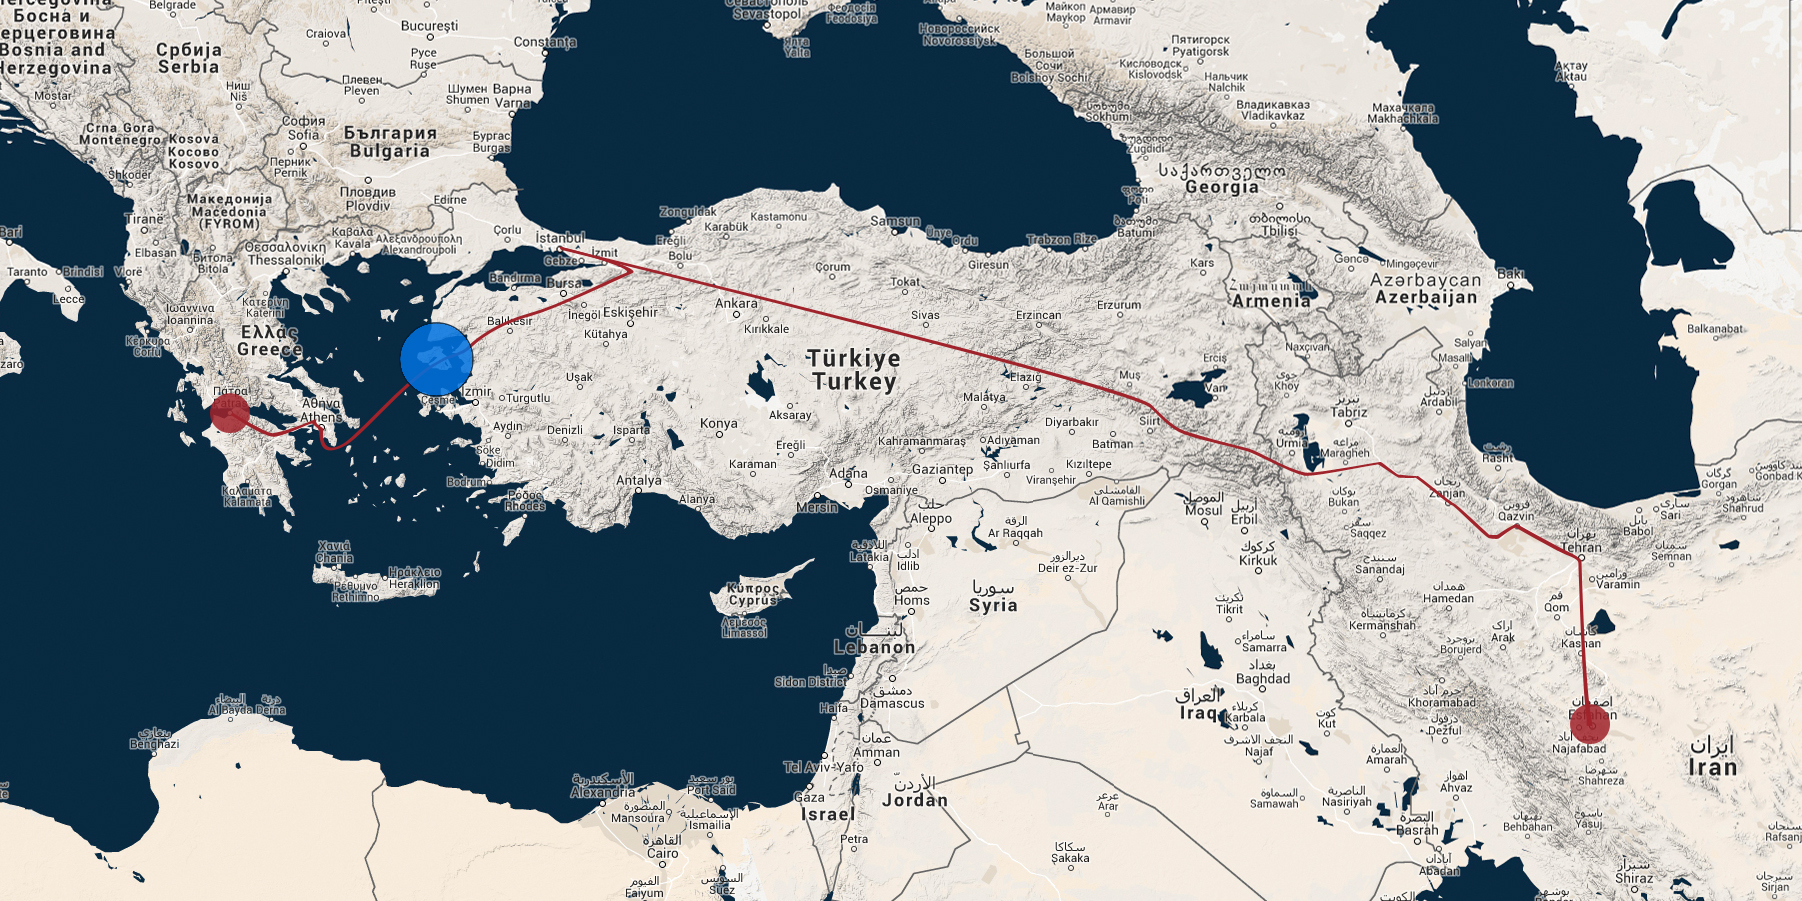 Die ungefähre Route von Javeds Flucht aus dem Iran bis nach Griechenland.